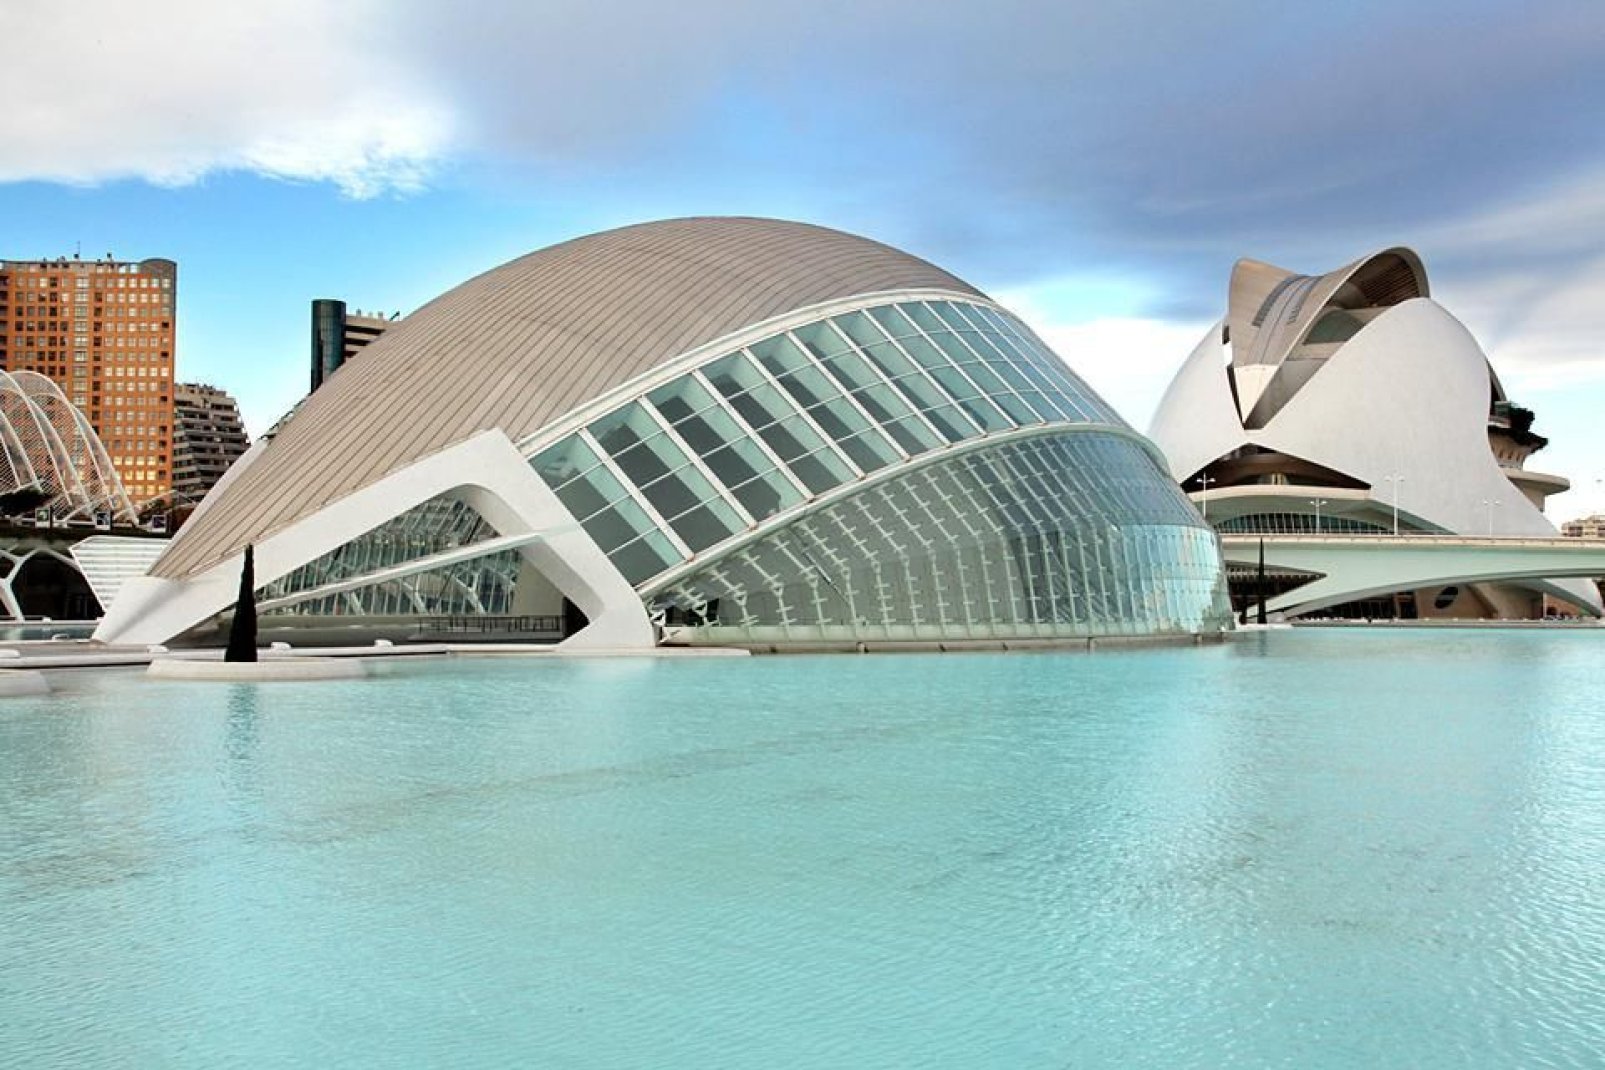 Moins connue que Barcelone, Madrid ou Séville, Valence ne manque pas d'atouts pour attirer les touristes.